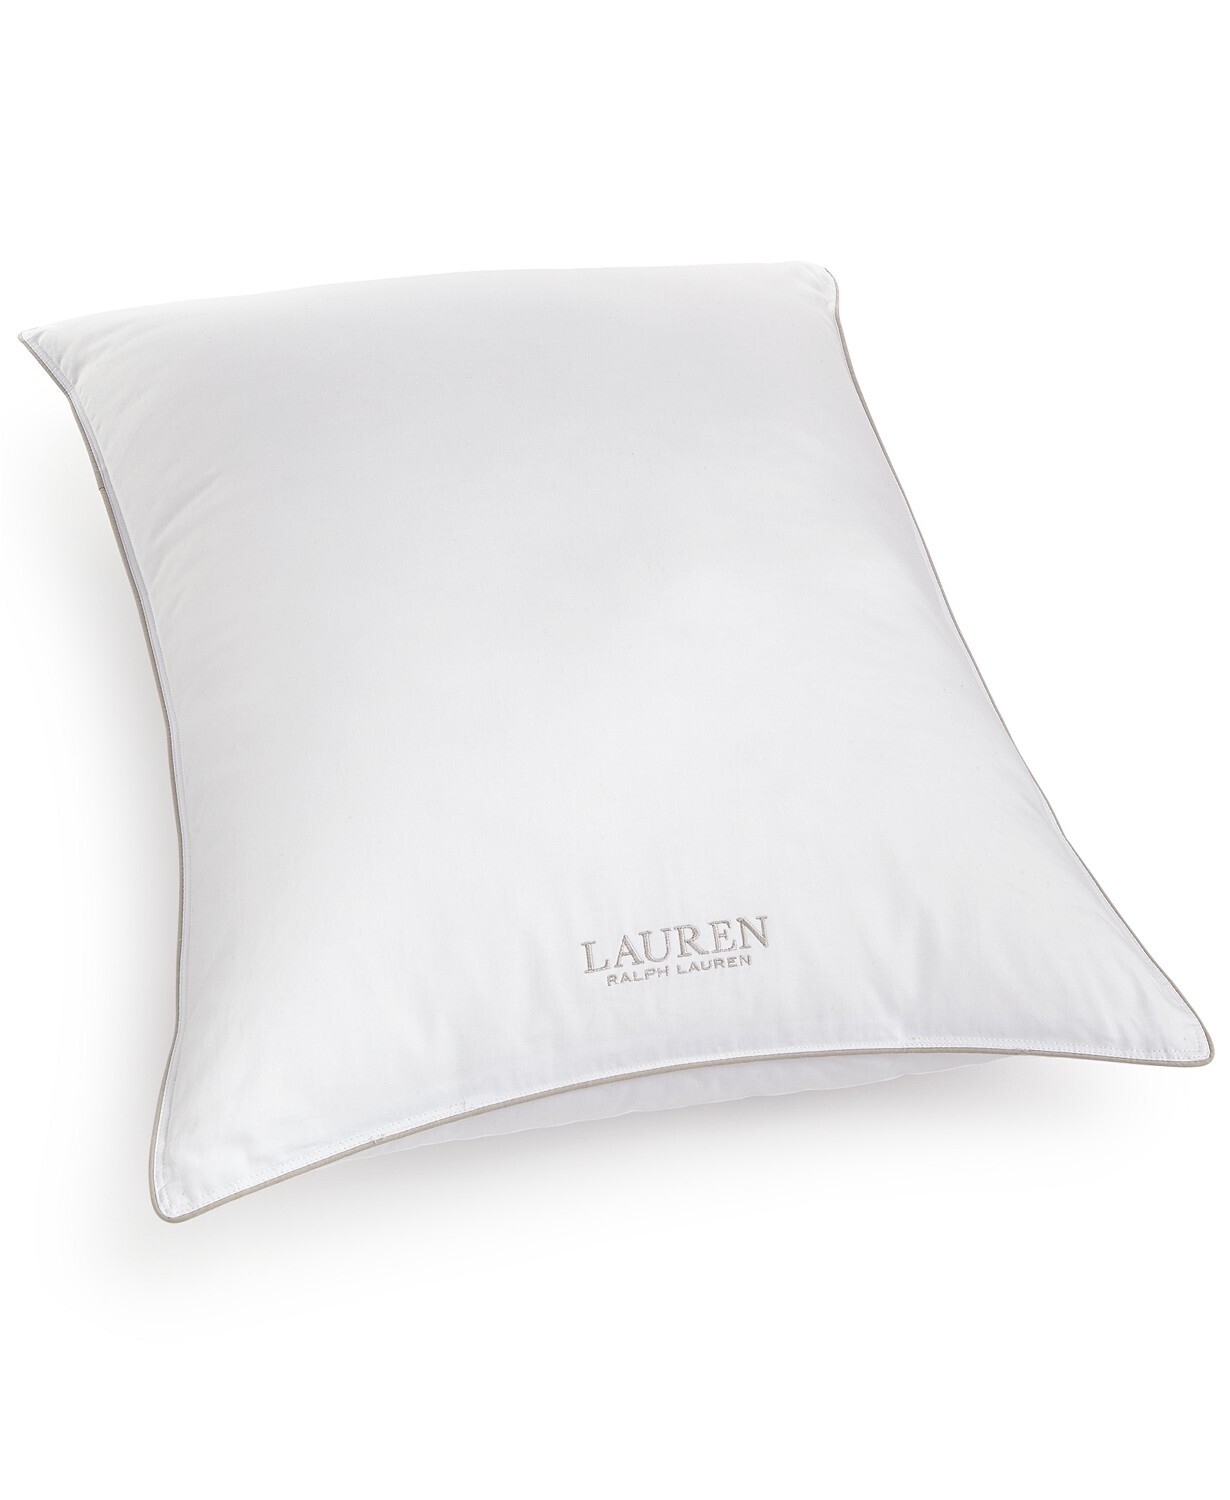 Lauren Ralph Lauren Lux-Loft Firm Density Down Alternative King Pillow